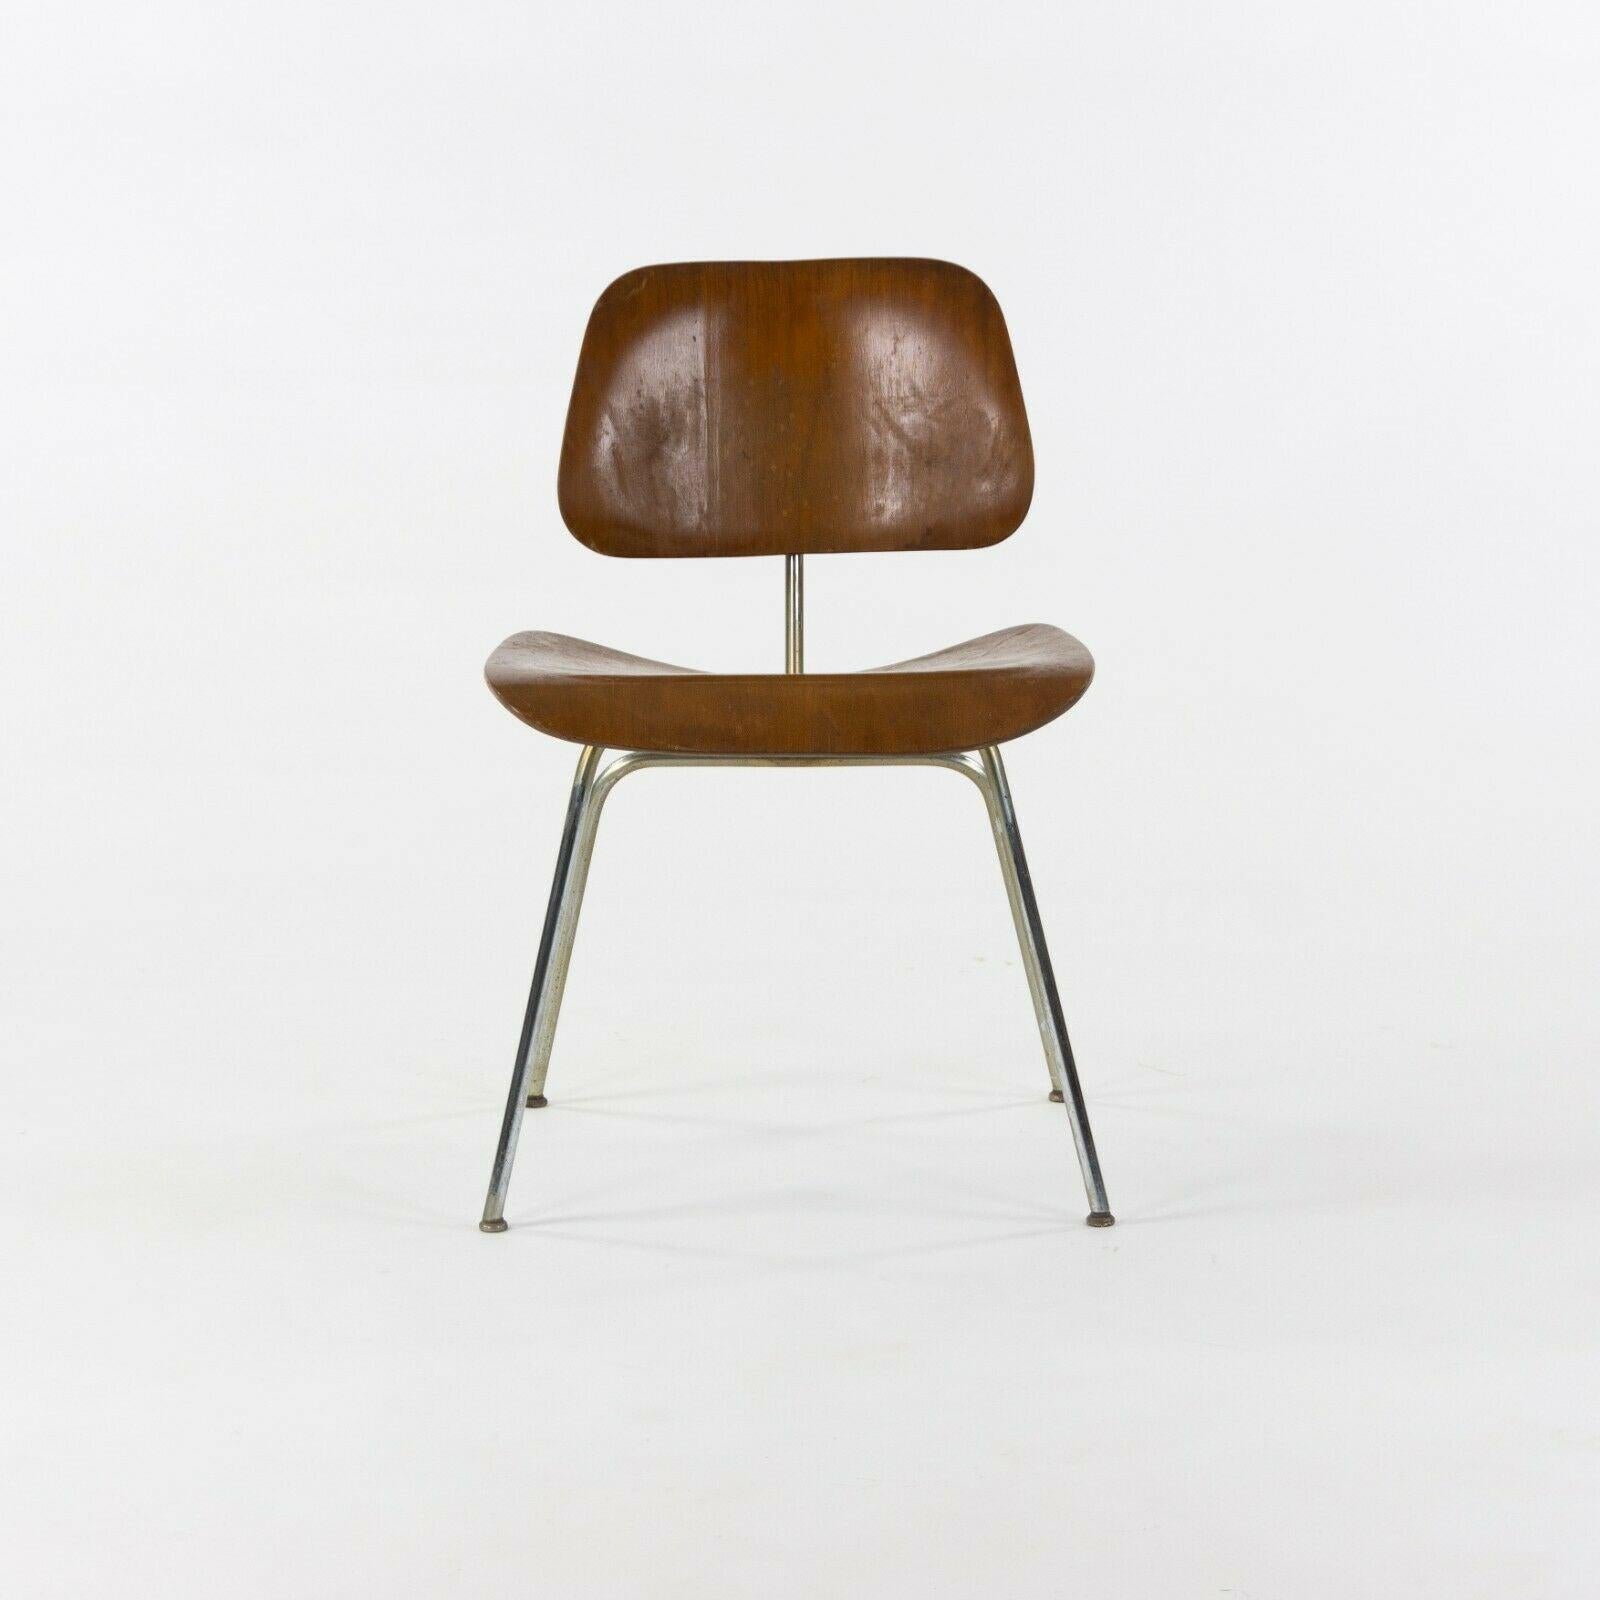 Zum Verkauf steht ein Original-Set von fünf DCM-Stühlen, entworfen von Charles und Ray Eames. Dieses spezielle Set stammt aus dem Jahr 1948 und wurde von der Evans Plywood Company (dem ersten Hersteller dieser Stühle) produziert. Bemerkenswert ist